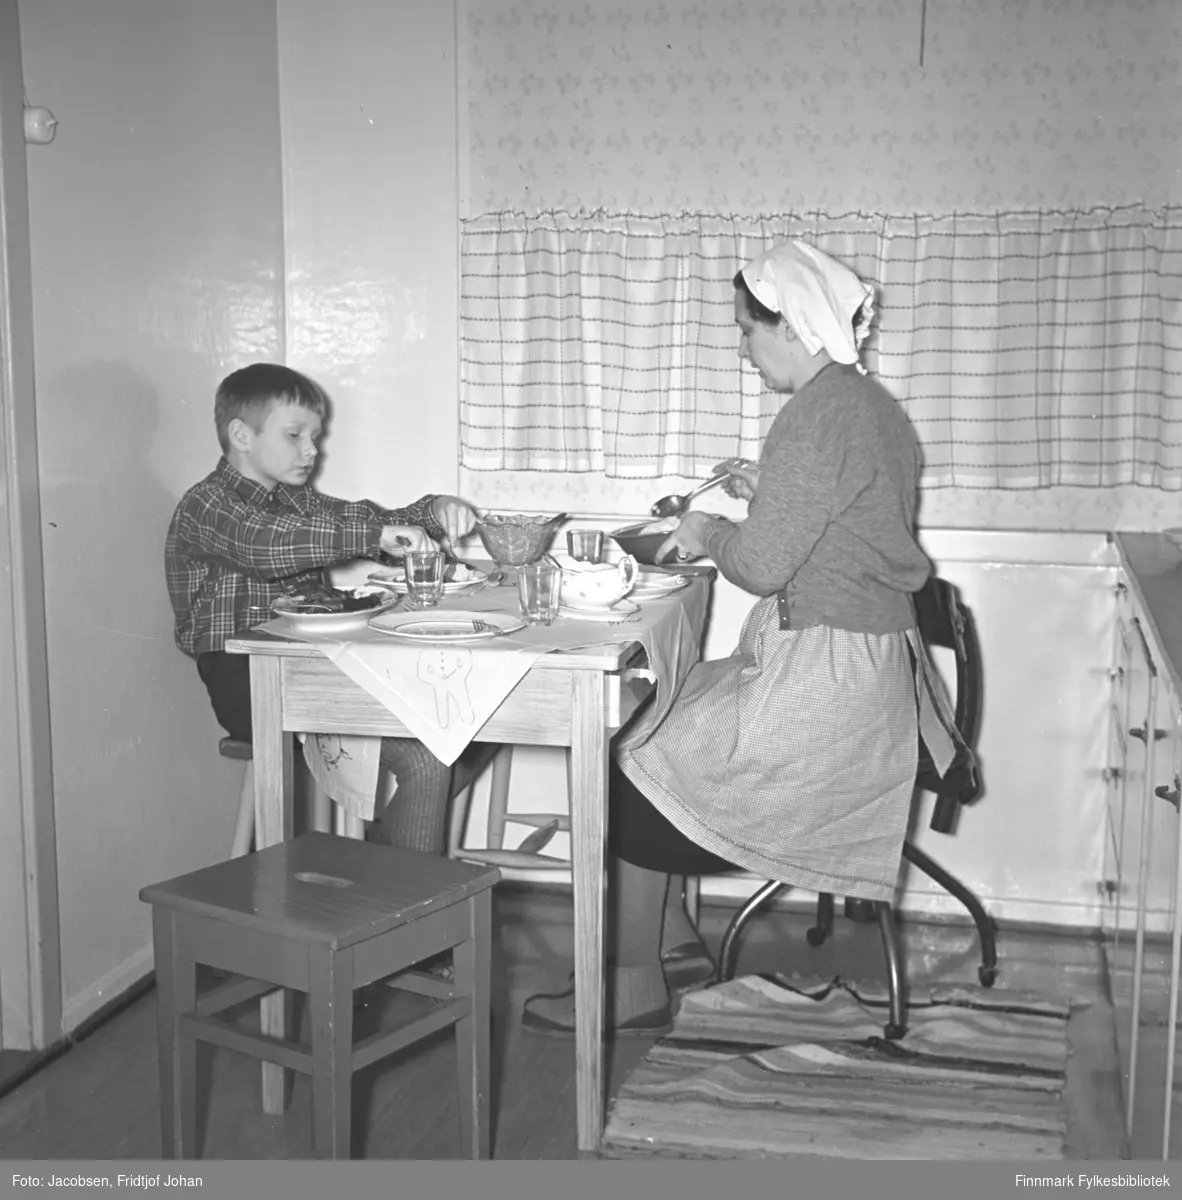 Aase og sønnen Arne Jacobsen ved middagsbordet på kjøkkenet i Storvannsveien. Arne har en rutet skjorte og ganske lys bukse på seg. Aase har et mørk skjørt, med et lyst forkle over og en litt mørkere jakke. På hodet har hun et hvitt skaut/tørkle. Arne sitter på en trekrakk og Aase på en kontorstol. Tallerkener, glass, skål og bestikk ligger på bordet mellom dem. En krakk og en rye ses på gulvet og en liten del av kjøkkeninnredningen ses helt til høyre på bildet. En lys gardin henger foran vinduet.